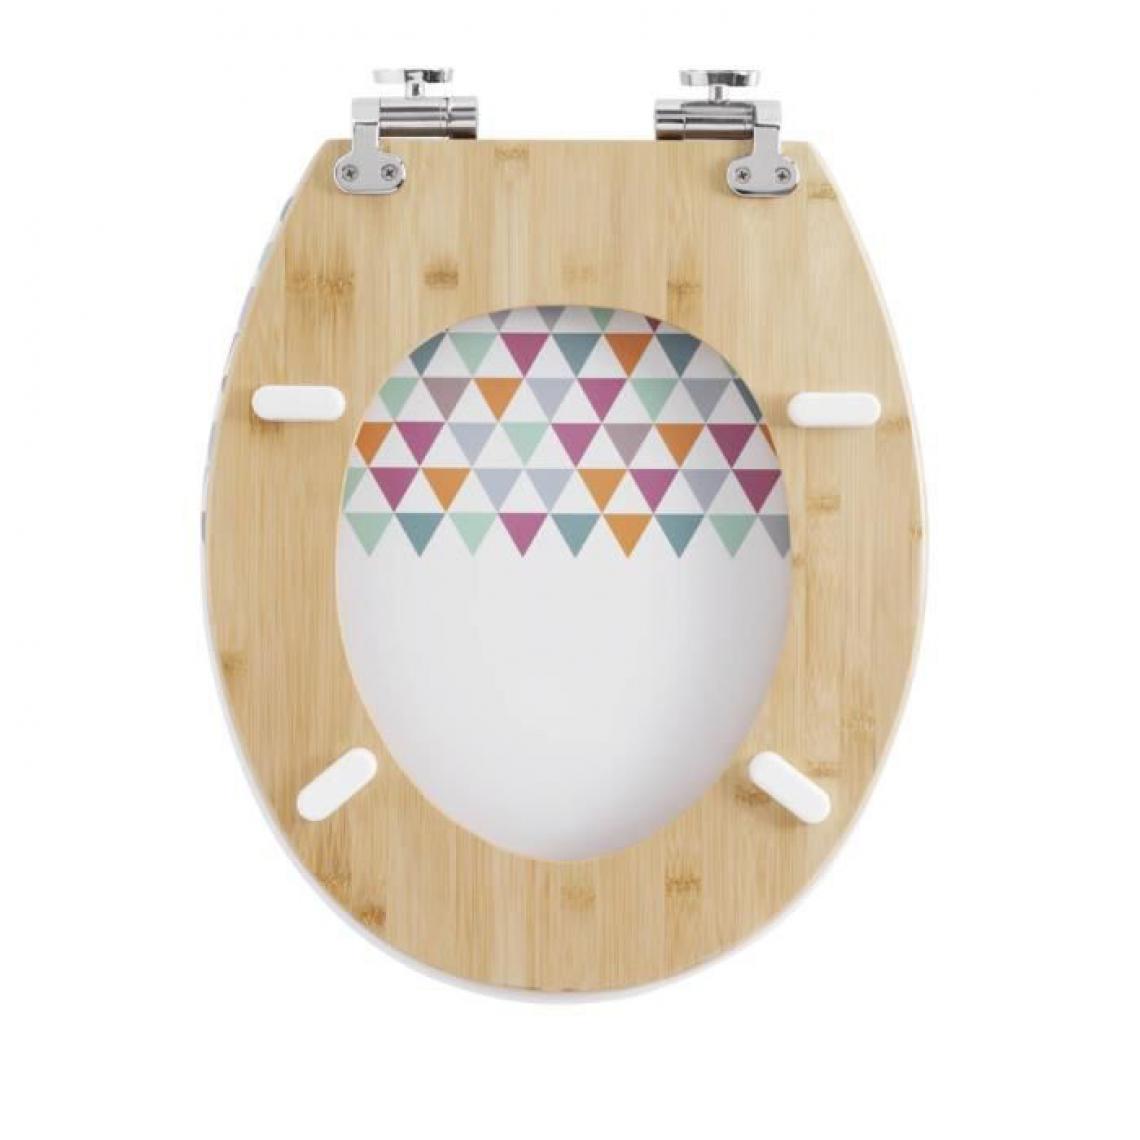 Icaverne - ABATTANT WC - REHAUSSEUR WC Abattant trendy line Diplomat décor pastels - Abattant WC